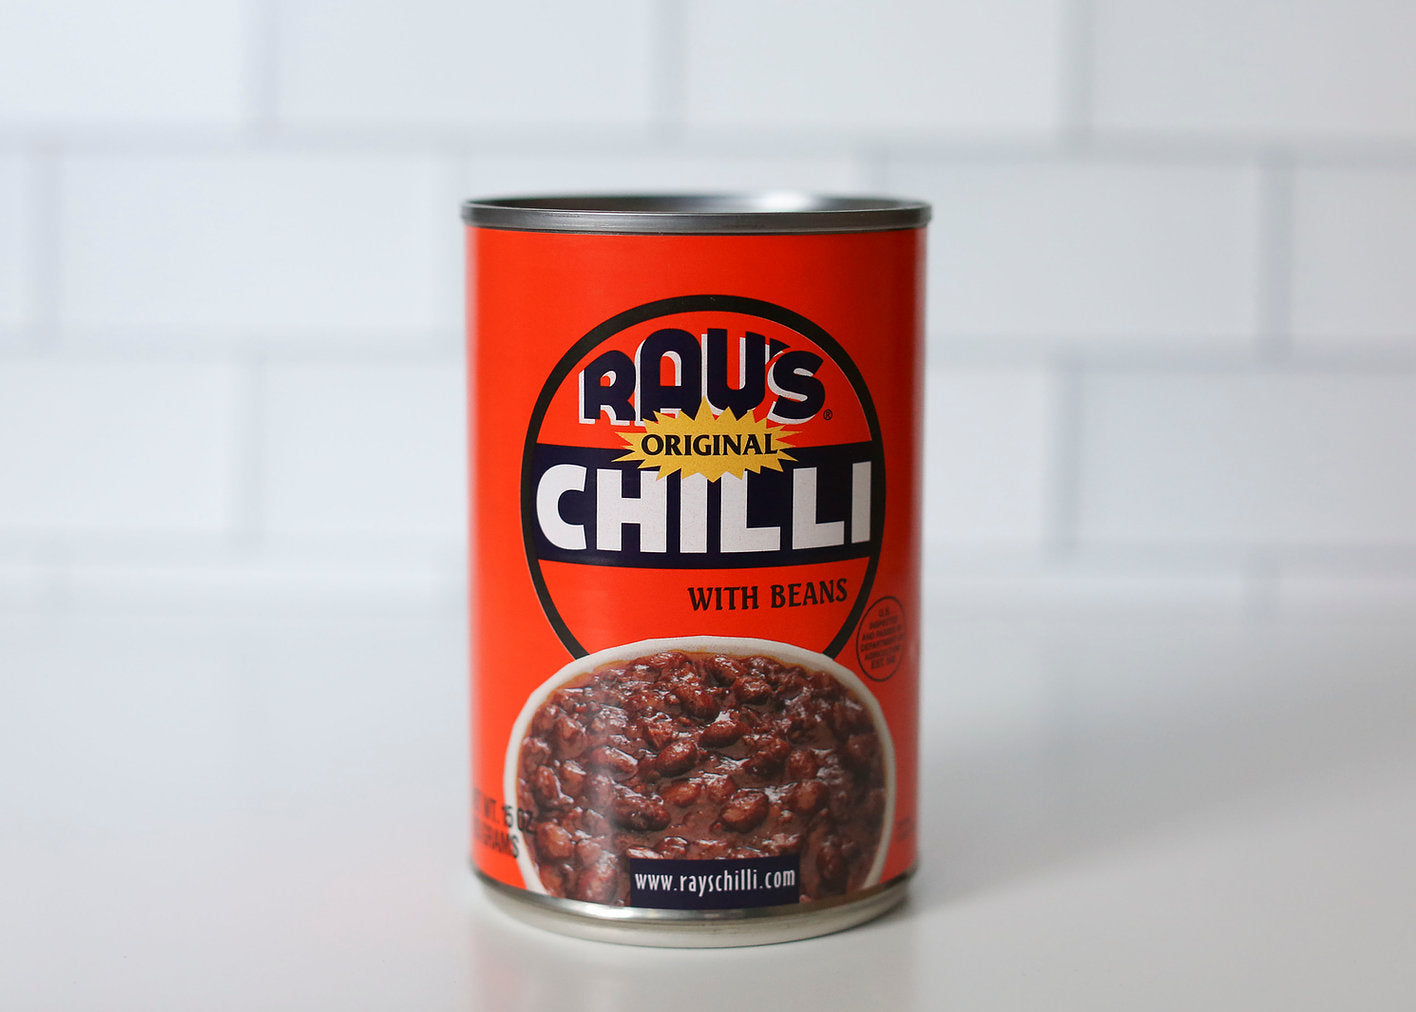 Ray's Brand Chili